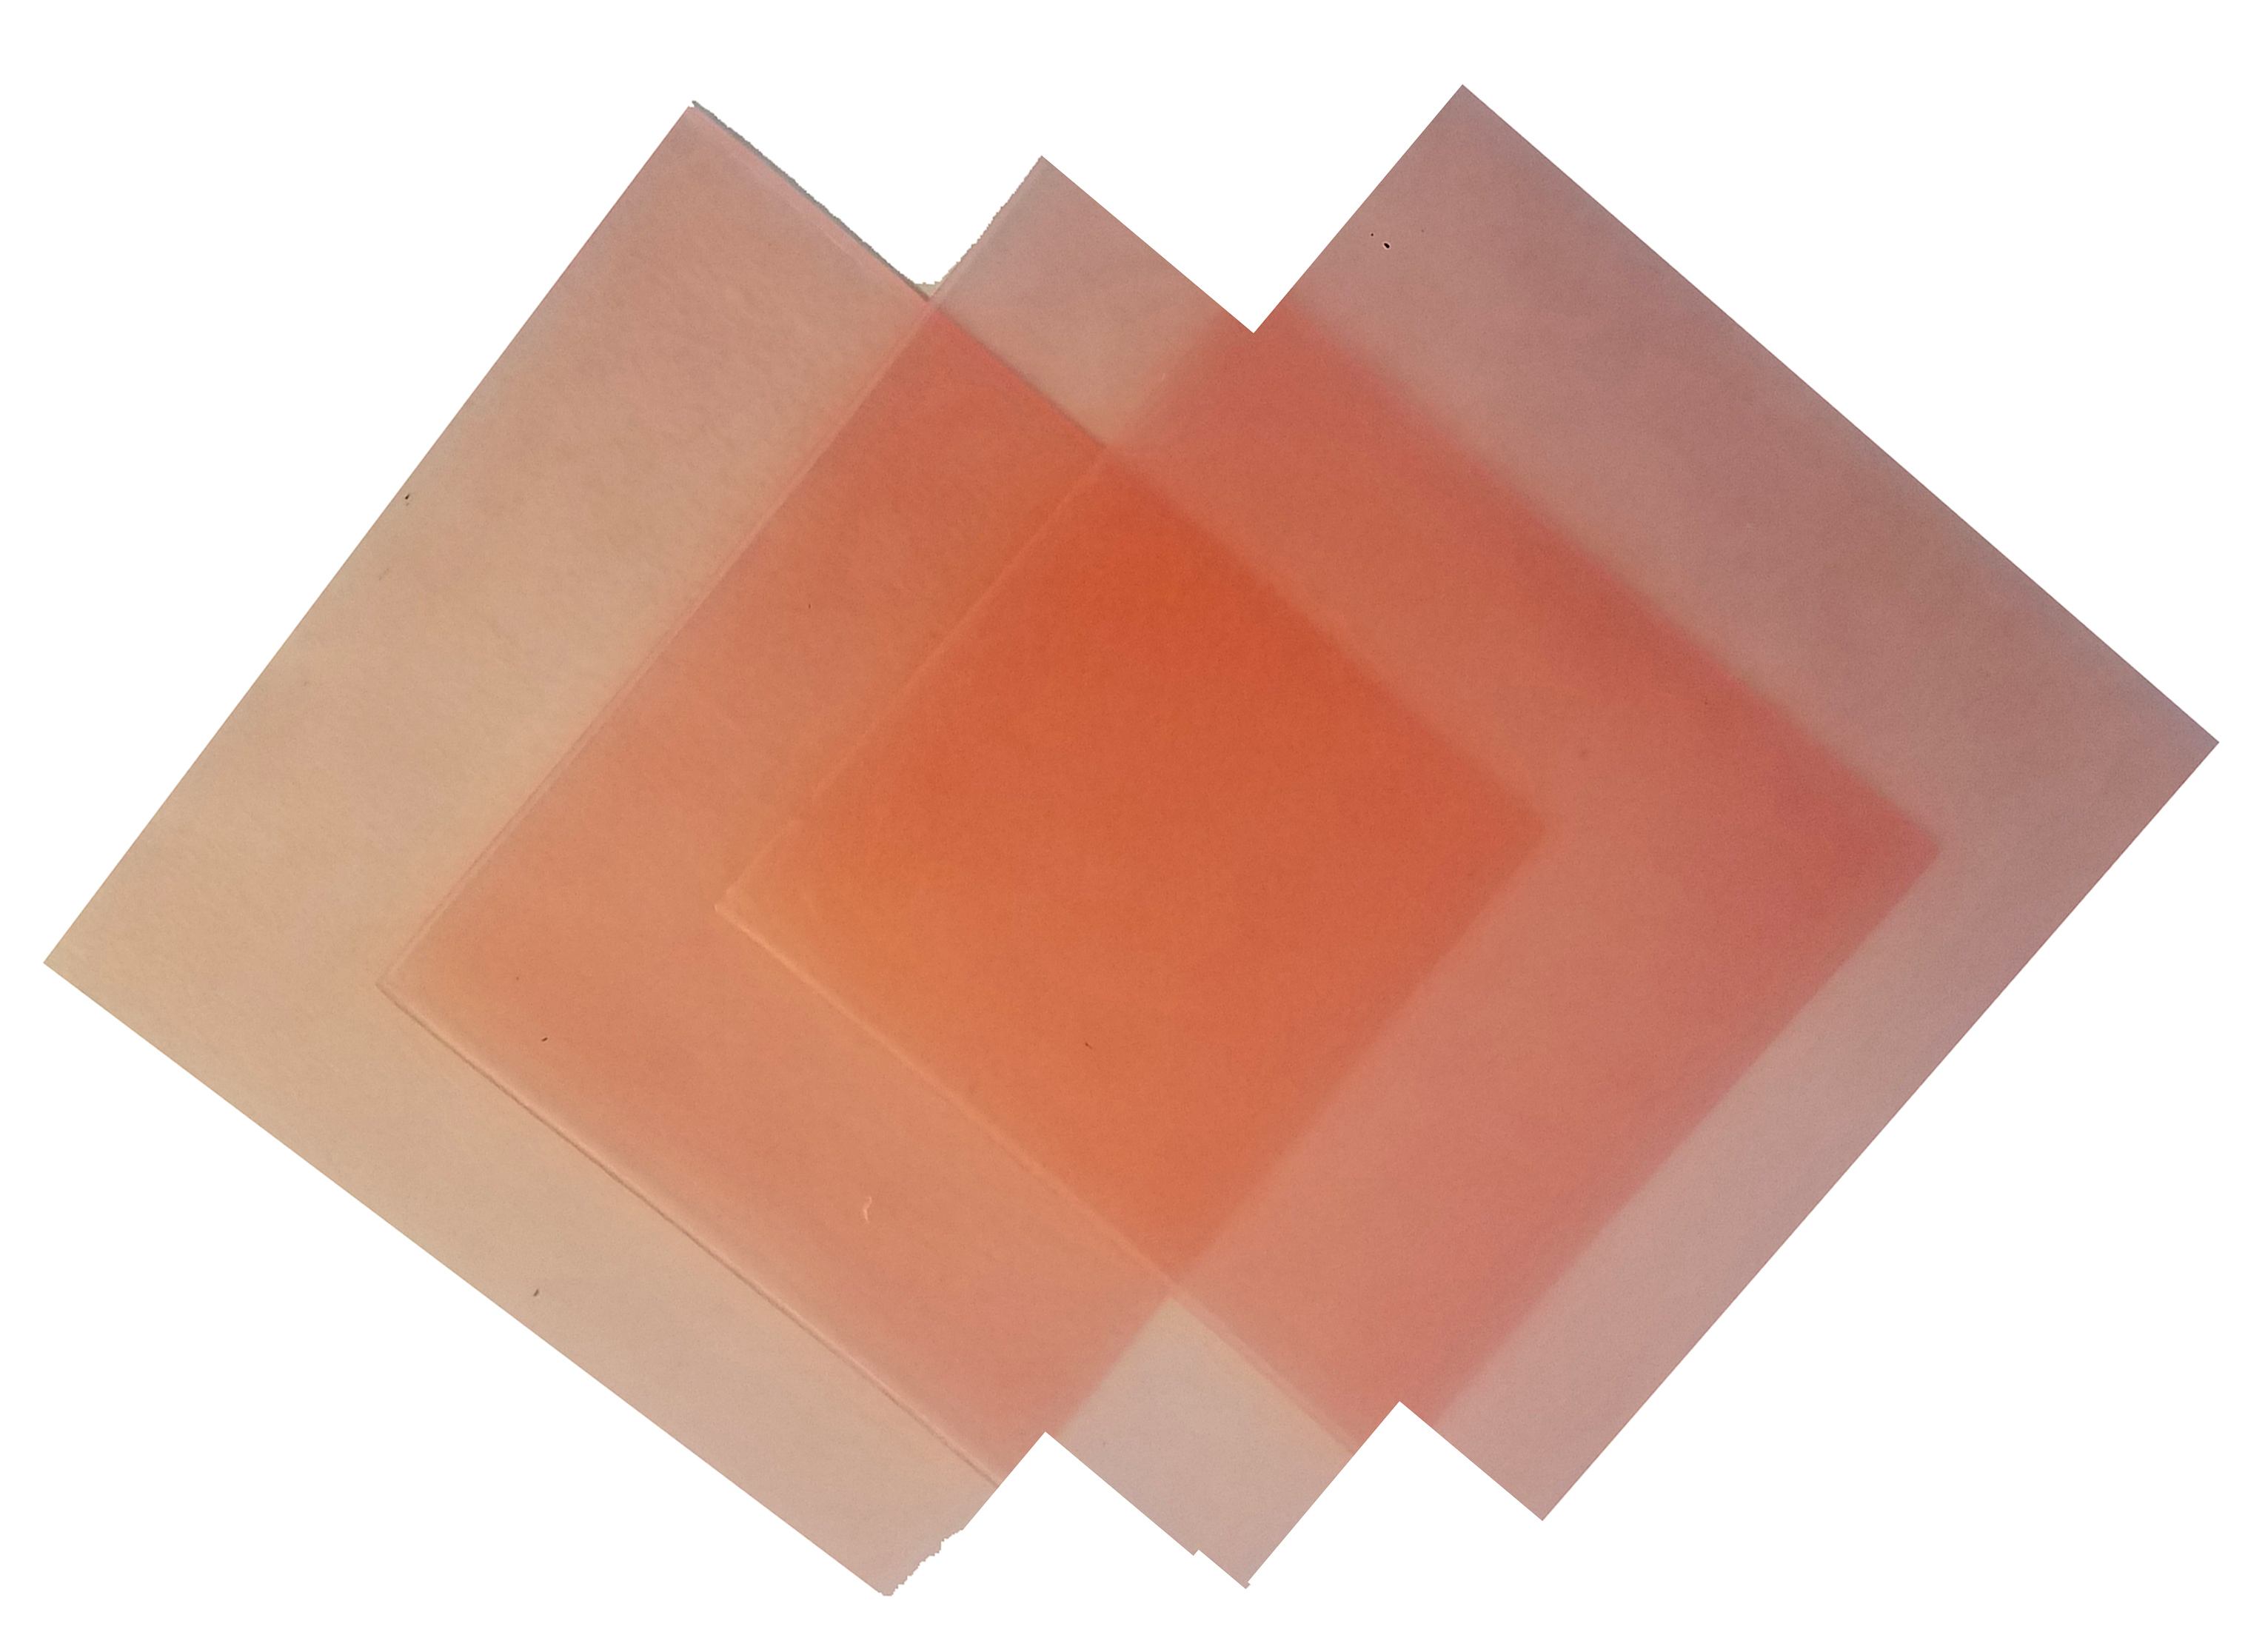 4"x4" sheet wax 24 gauge pink